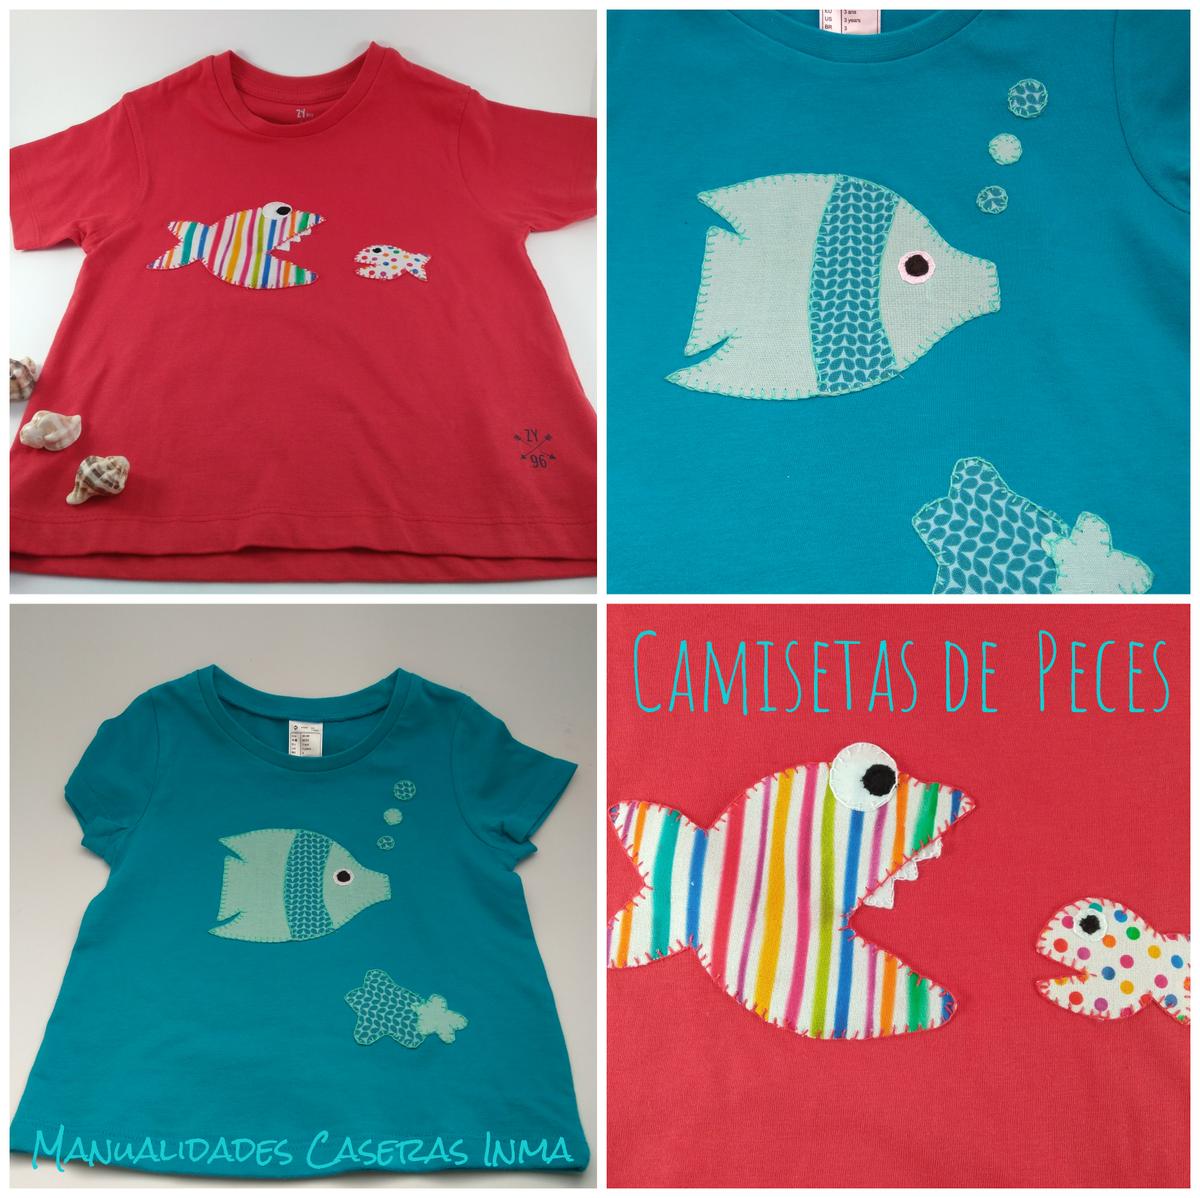 Manualidades Caseras Inma_ Camisetas de peces 